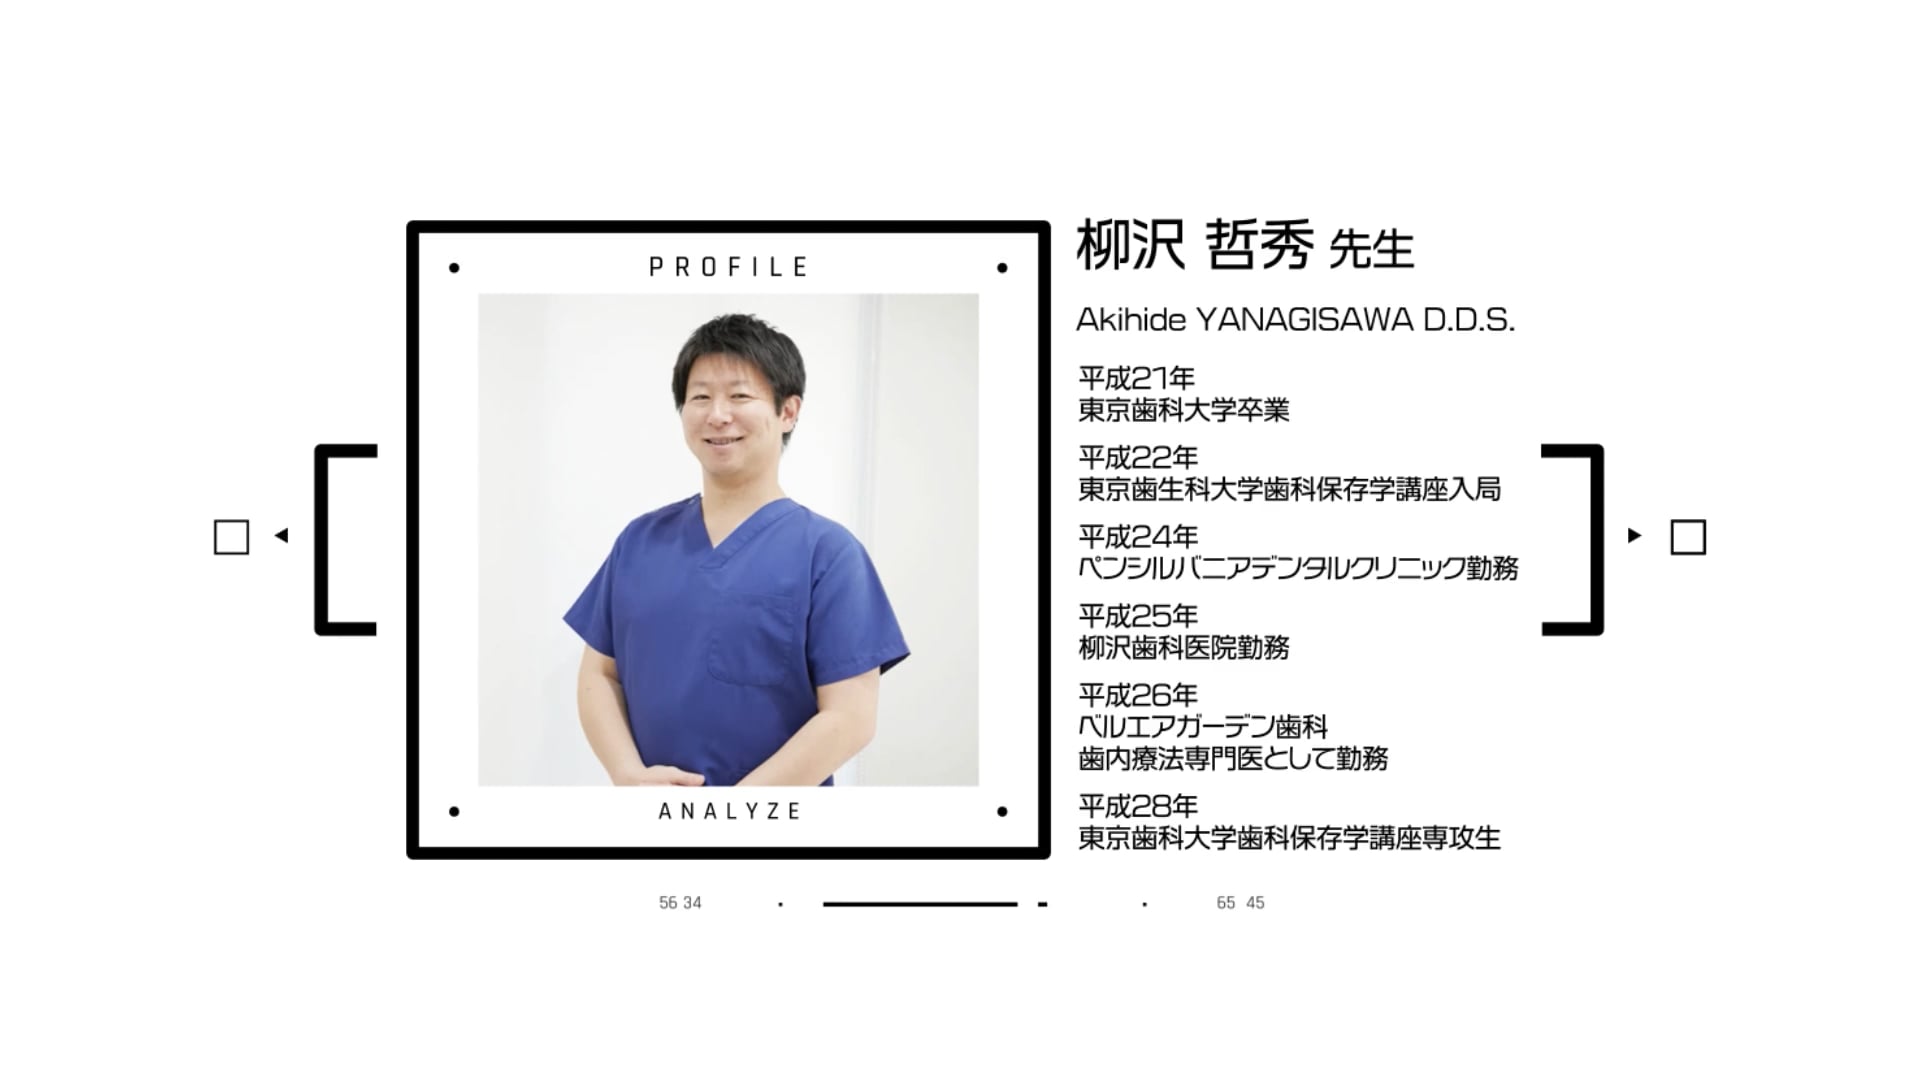 歯科独立の準備・流れ・必要なものがわかる「開業探訪」│柳沢哲秀先生